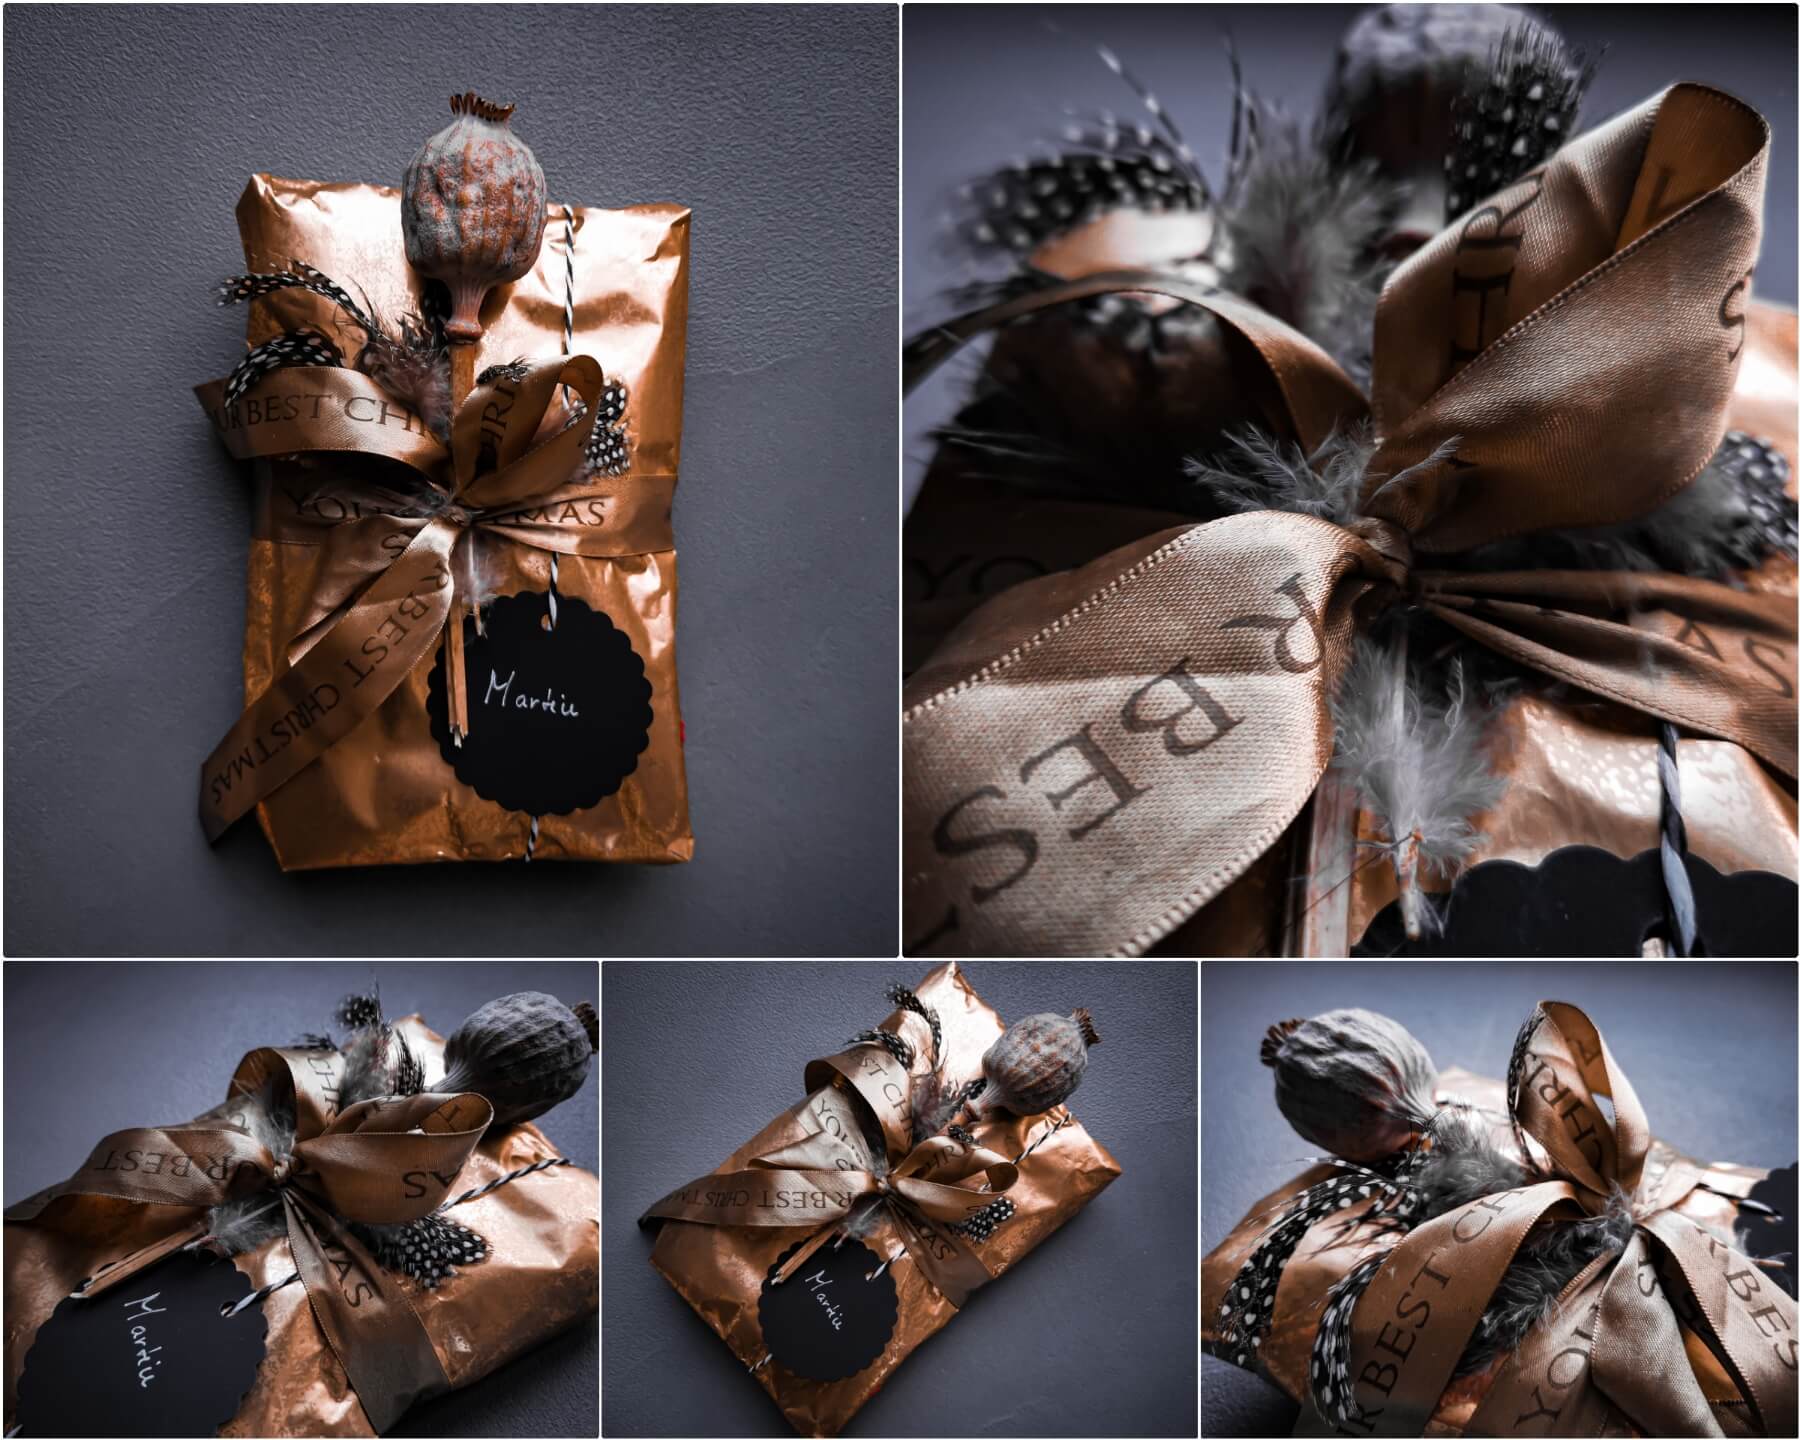 inCollage 20191208 170000406 resized 20191208 050953355 - Geschenke verpacken: 11 kreative Tipps zum Selbermachen